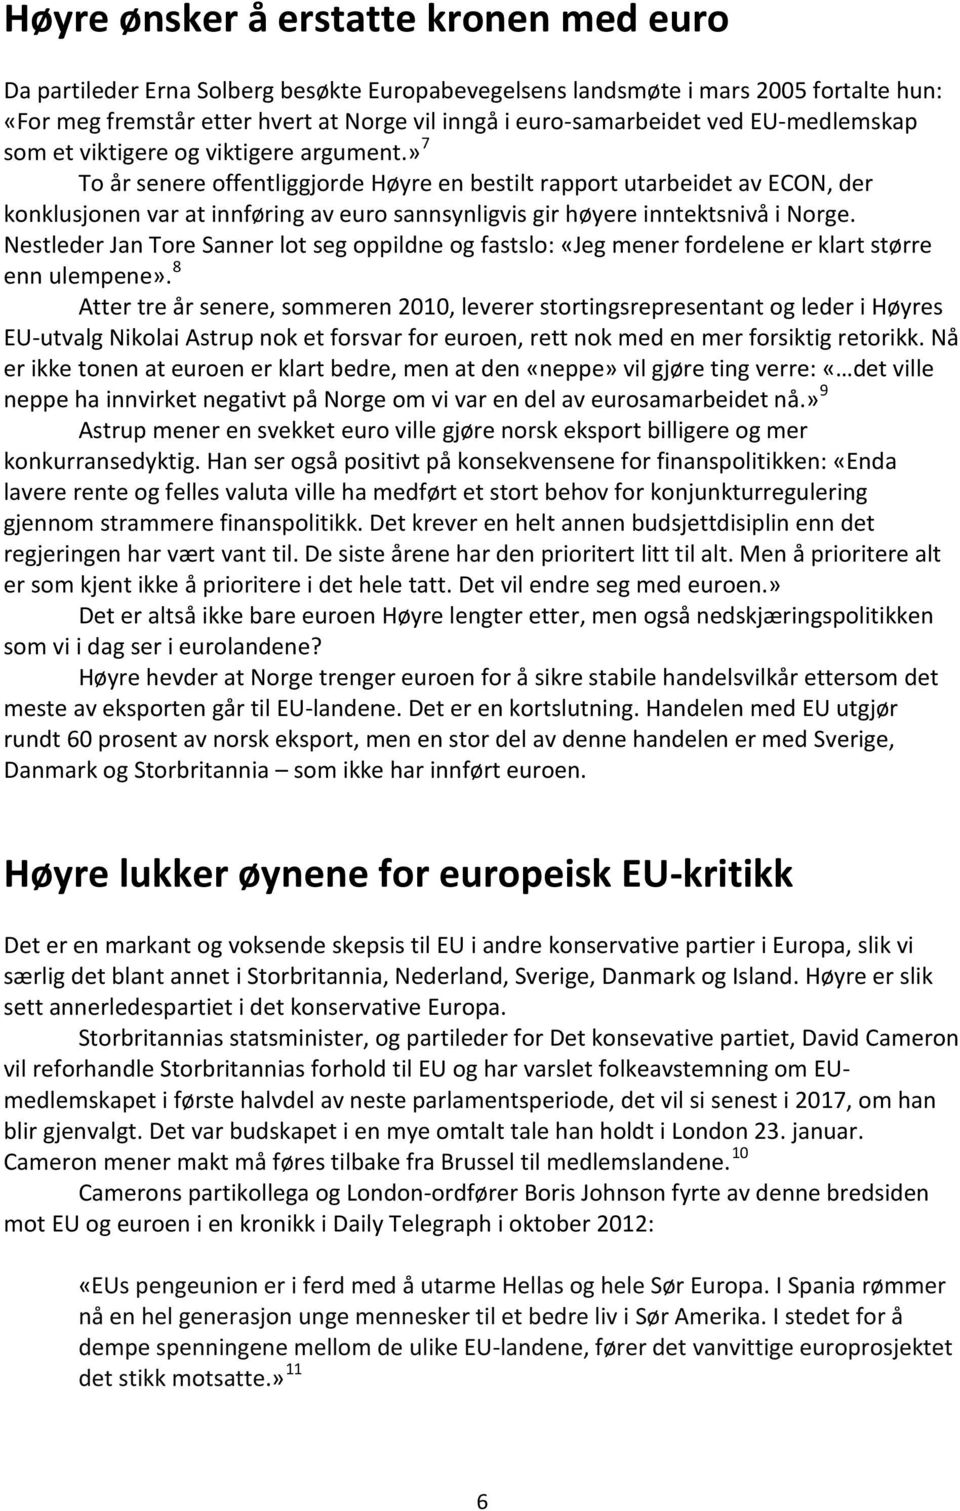 » 7 To år senere offentliggjorde Høyre en bestilt rapport utarbeidet av ECON, der konklusjonen var at innføring av euro sannsynligvis gir høyere inntektsnivå i Norge.